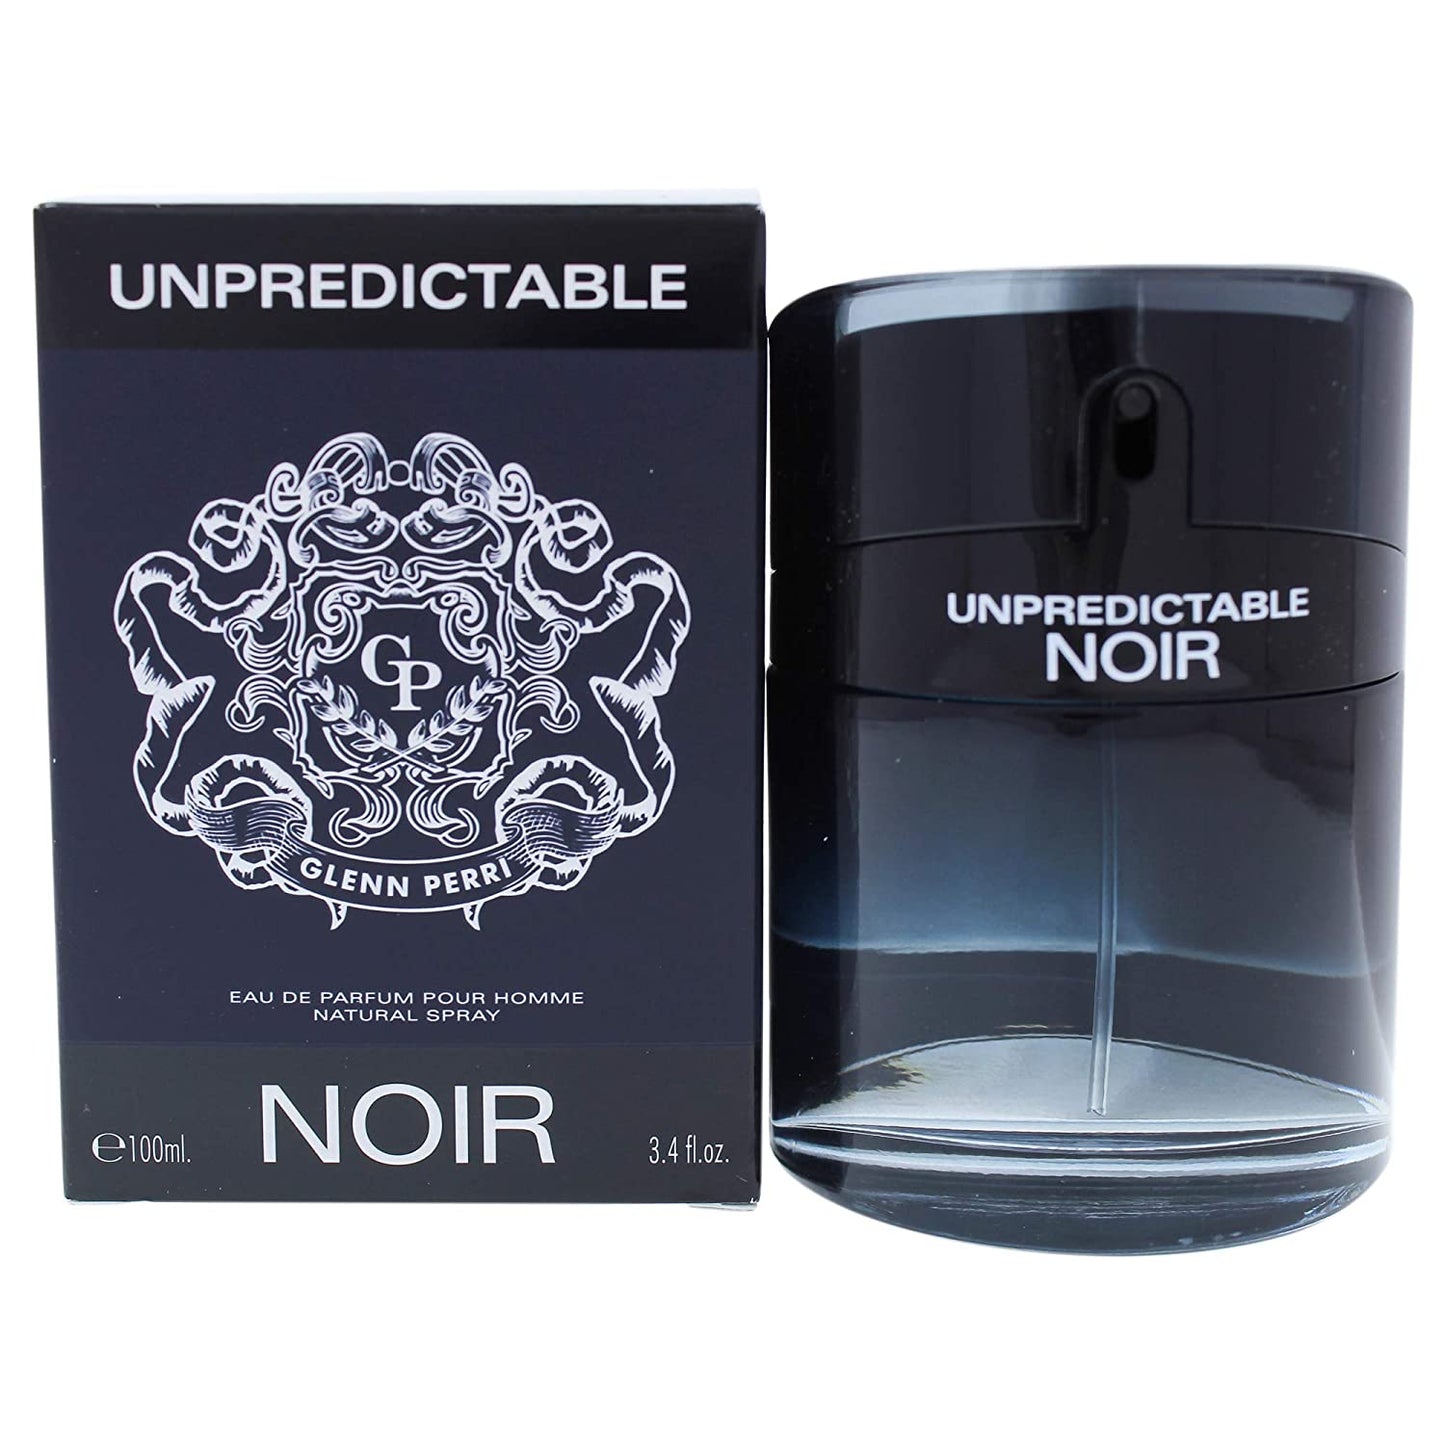 Glenn Perri Unpredictable Noir Cologne for Men 3.4 oz Eau de Parfum Spray